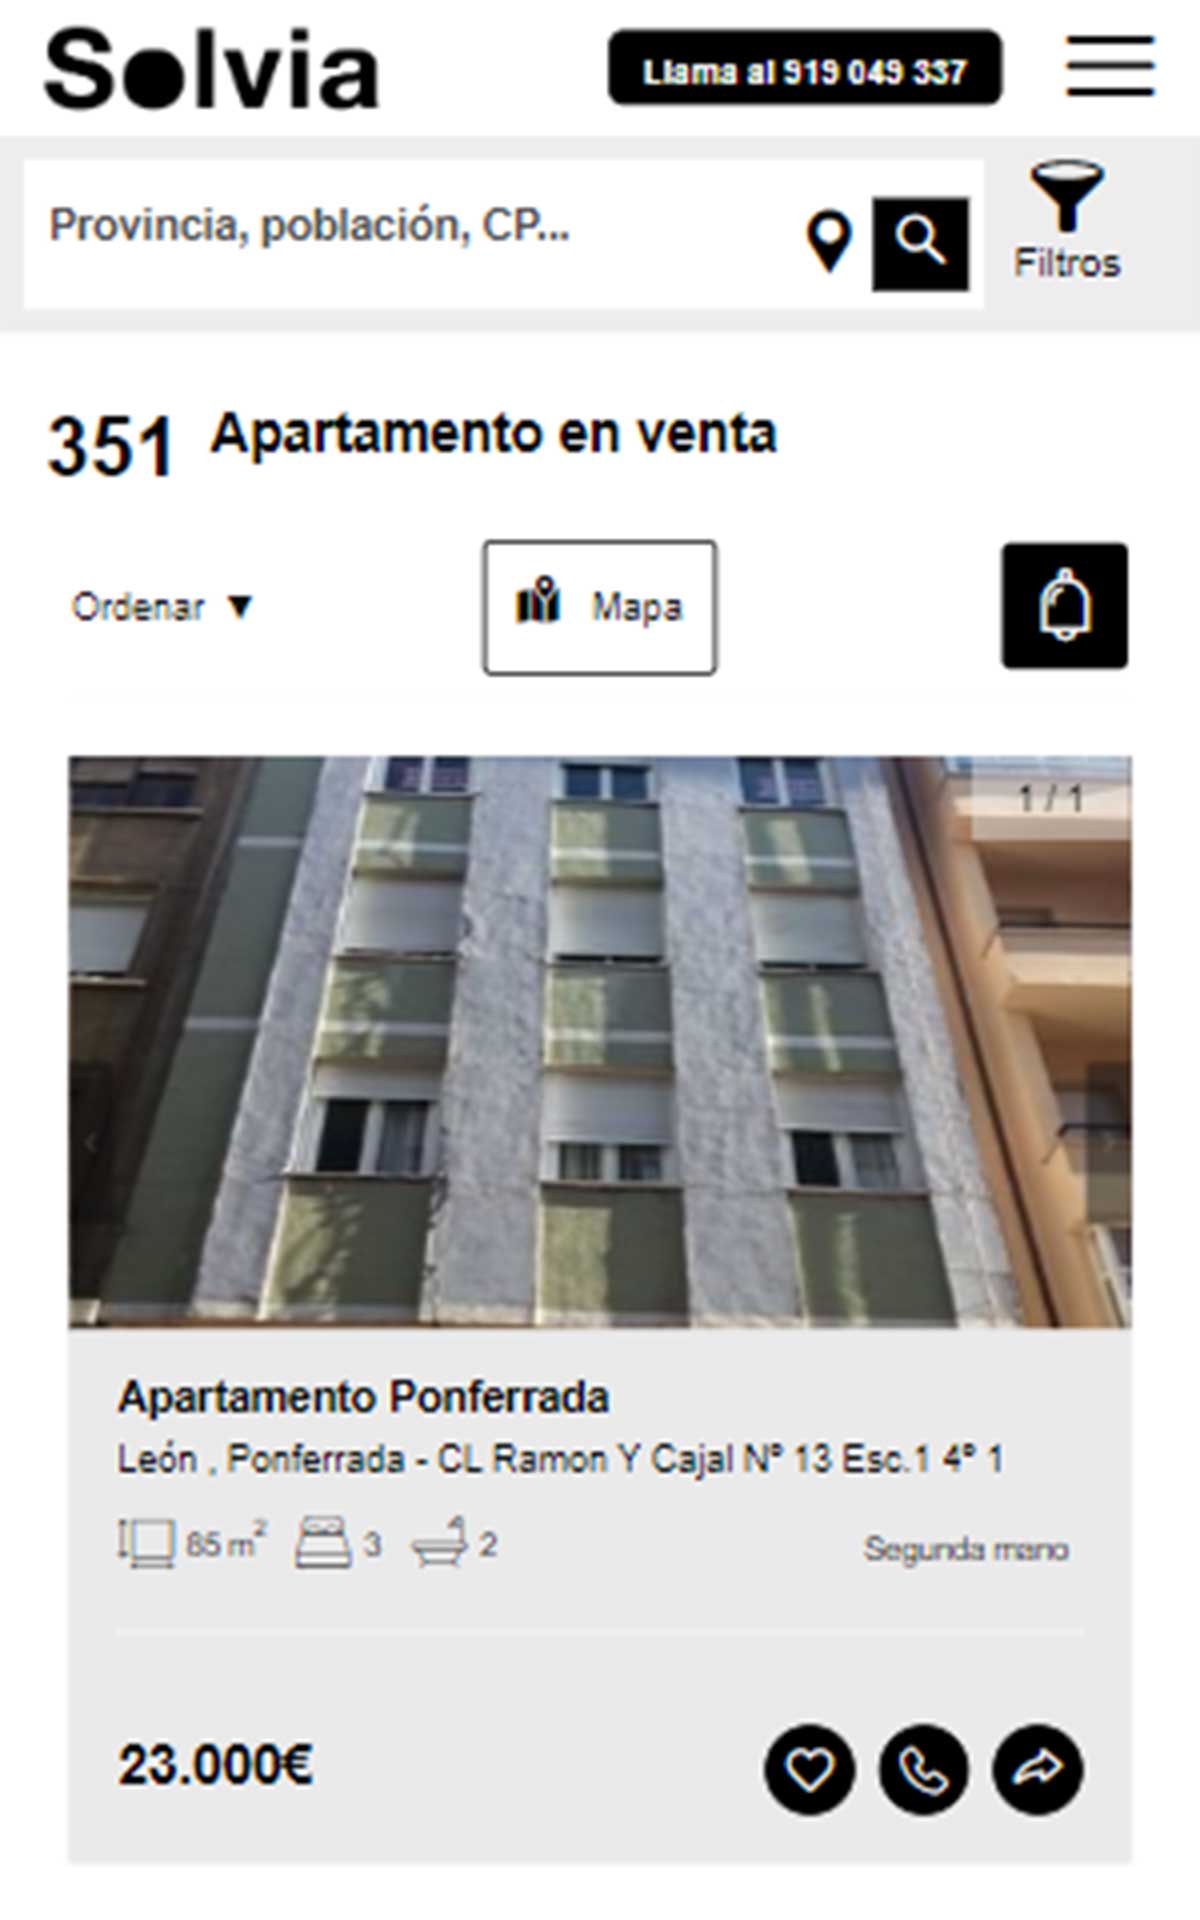 Apartamento a la venta por 23.000 euros